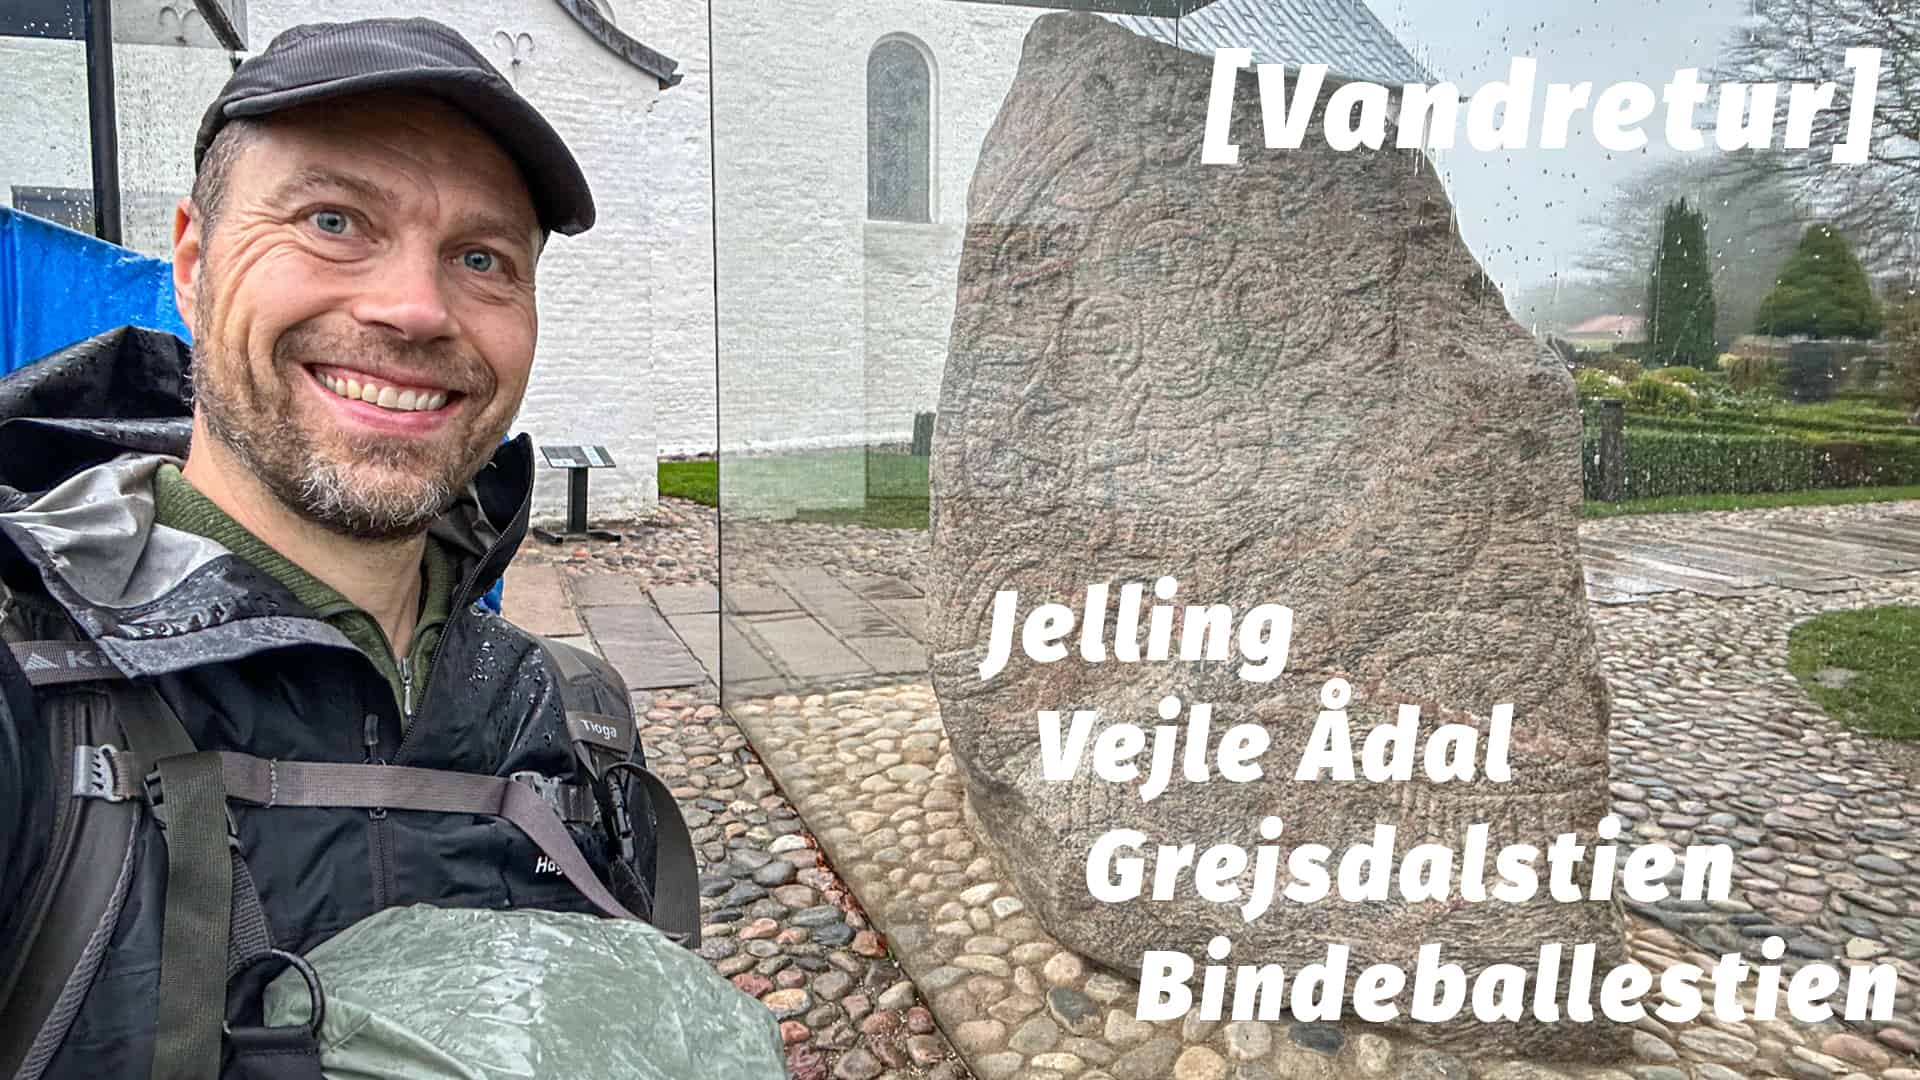 Vandretur ad Grejsdalstien, Vejle Ådal og Bindeballestien [Mikroeventyr] med eventyrer Erik B. Jørgensen